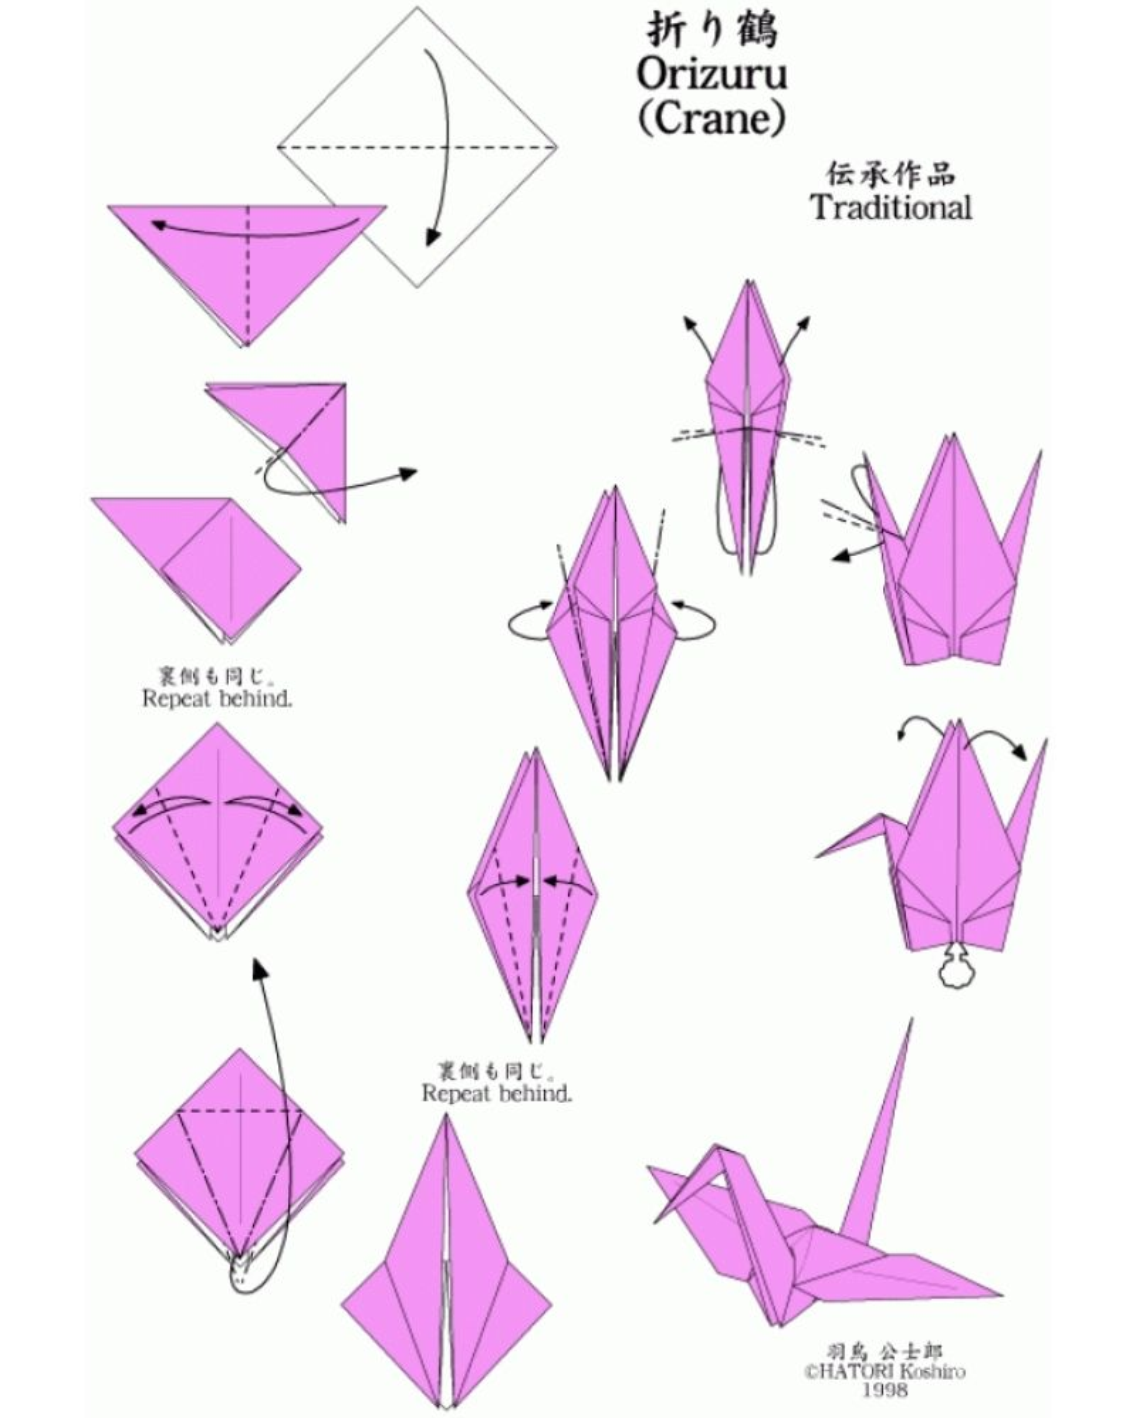 Сделать журавлика оригами пошаговая инструкция для начинающих. Журавлик из бумаги схема складывания. Журавлик оригами из бумаги схемы для детей. Схема складывания журавлика из бумаги пошаговая. Оригами из бумаги журавль пошаговая схема для детей.